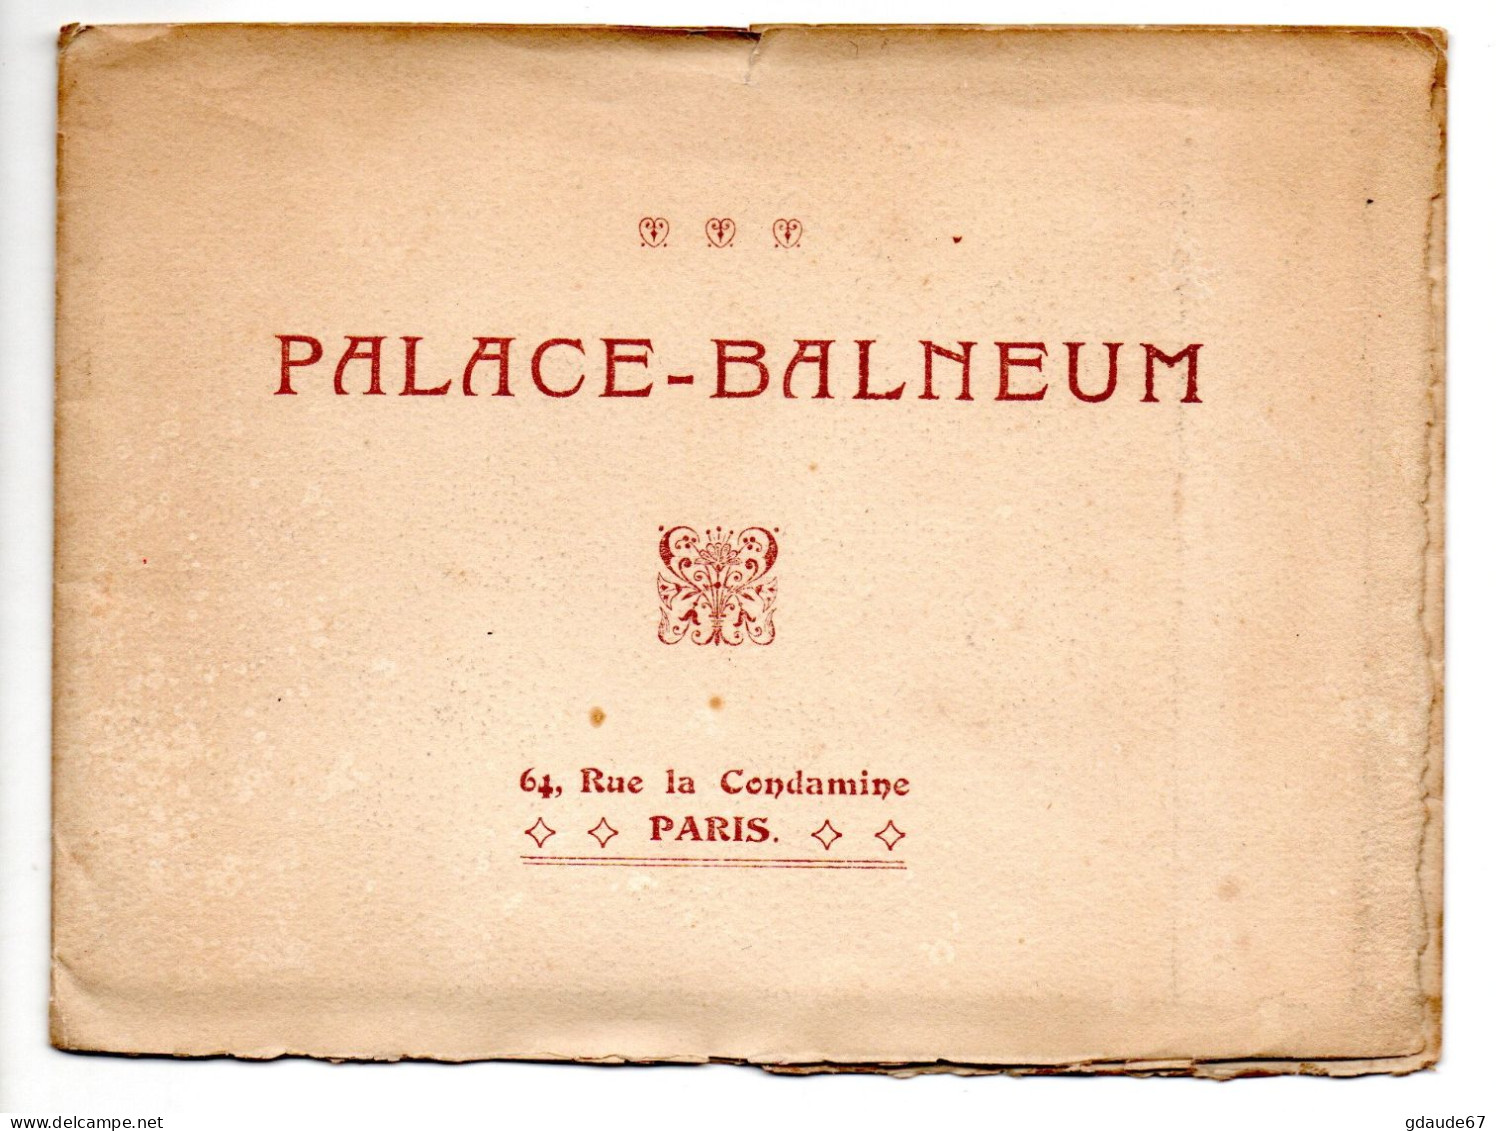 PARIS 17 - PALACE BALNEUM - 64 RUE DE LA CONDAMINE - DEPLIANT PUBLICITAIRE (FORMAT REPLIE ~15.5x11.5cm) - District 17